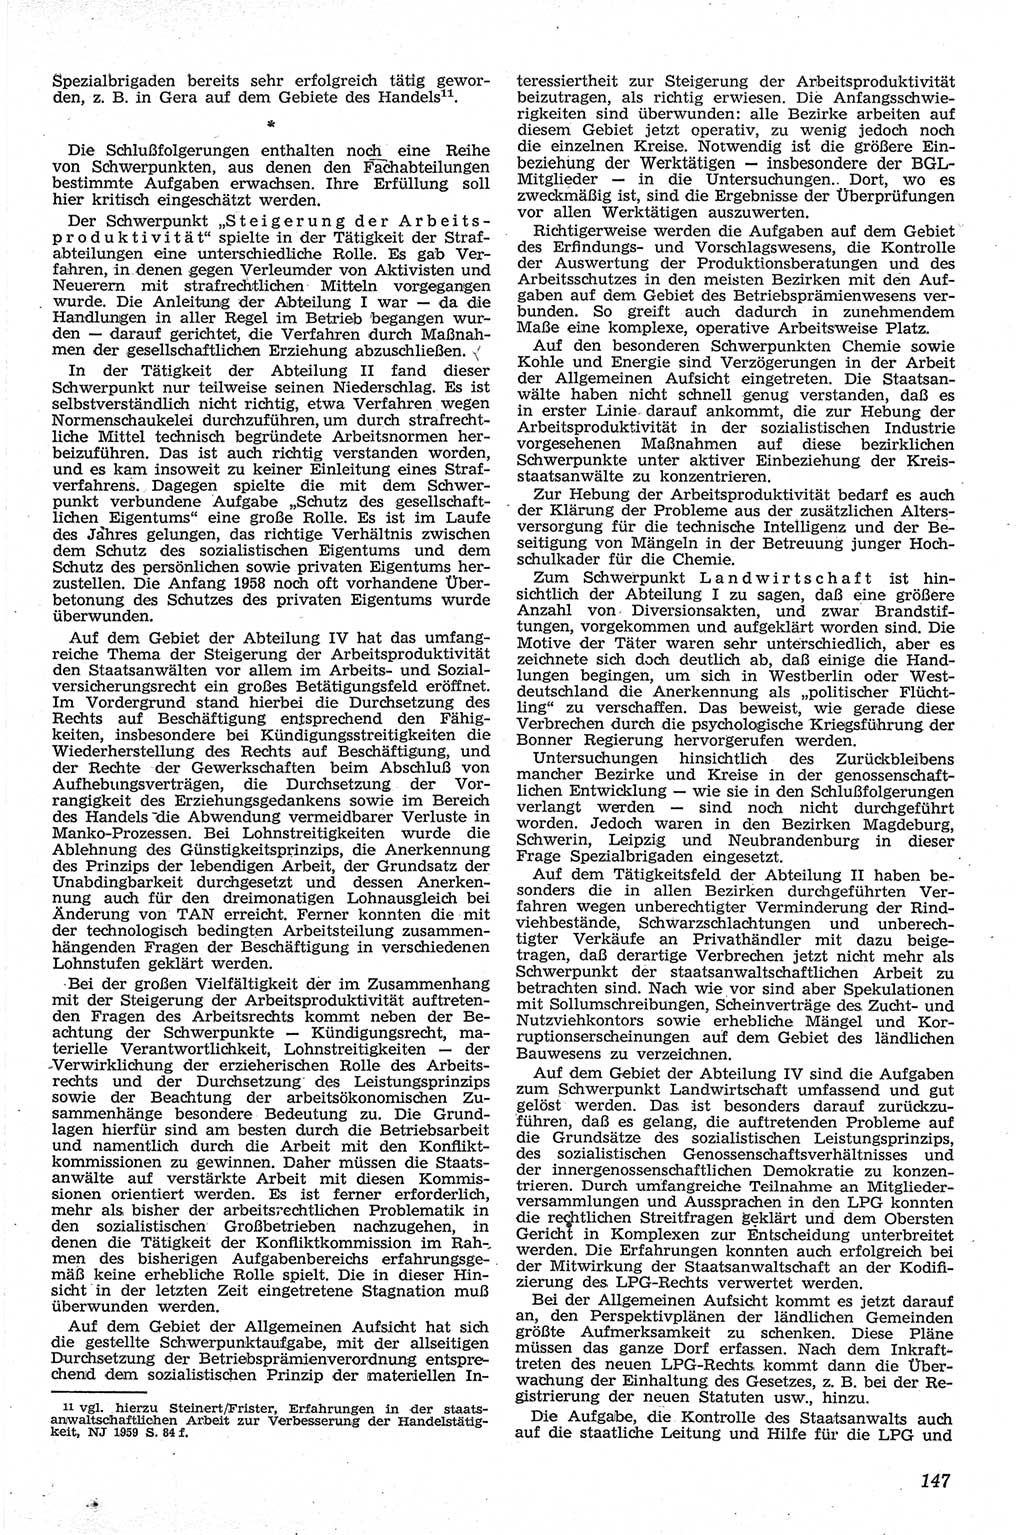 Neue Justiz (NJ), Zeitschrift für Recht und Rechtswissenschaft [Deutsche Demokratische Republik (DDR)], 13. Jahrgang 1959, Seite 147 (NJ DDR 1959, S. 147)